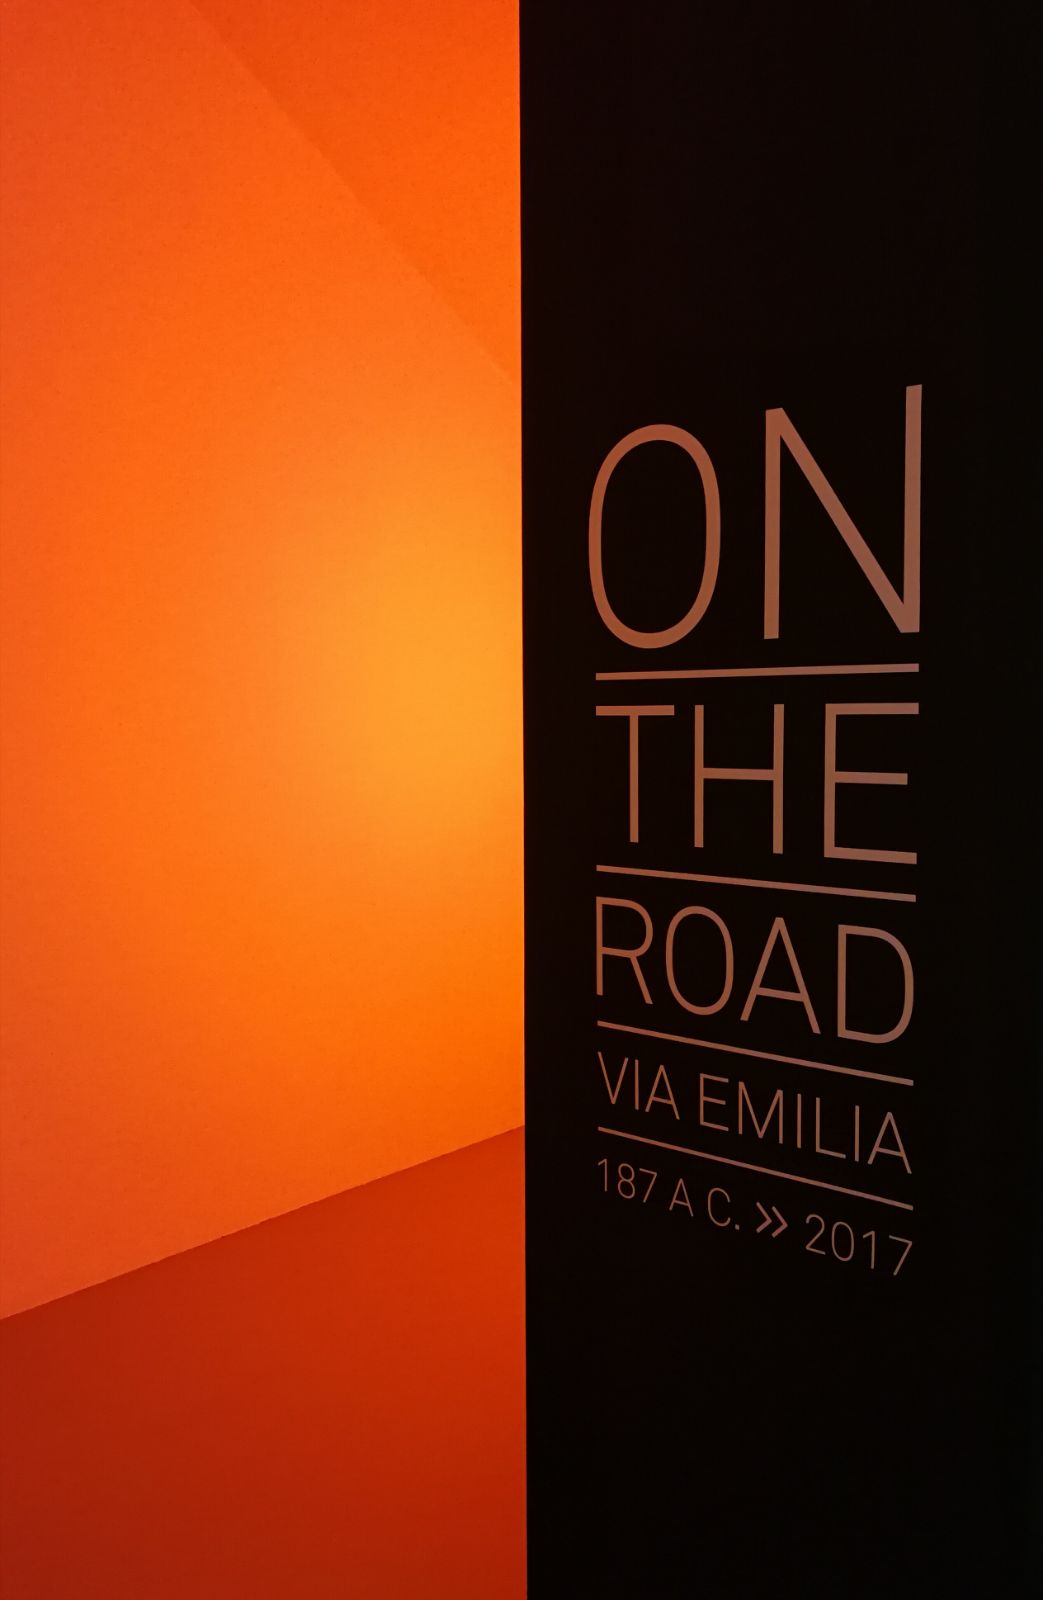 On the Road: la Via Emilia attraverso il tempo, a Reggio Emilia 2200 anni di storia